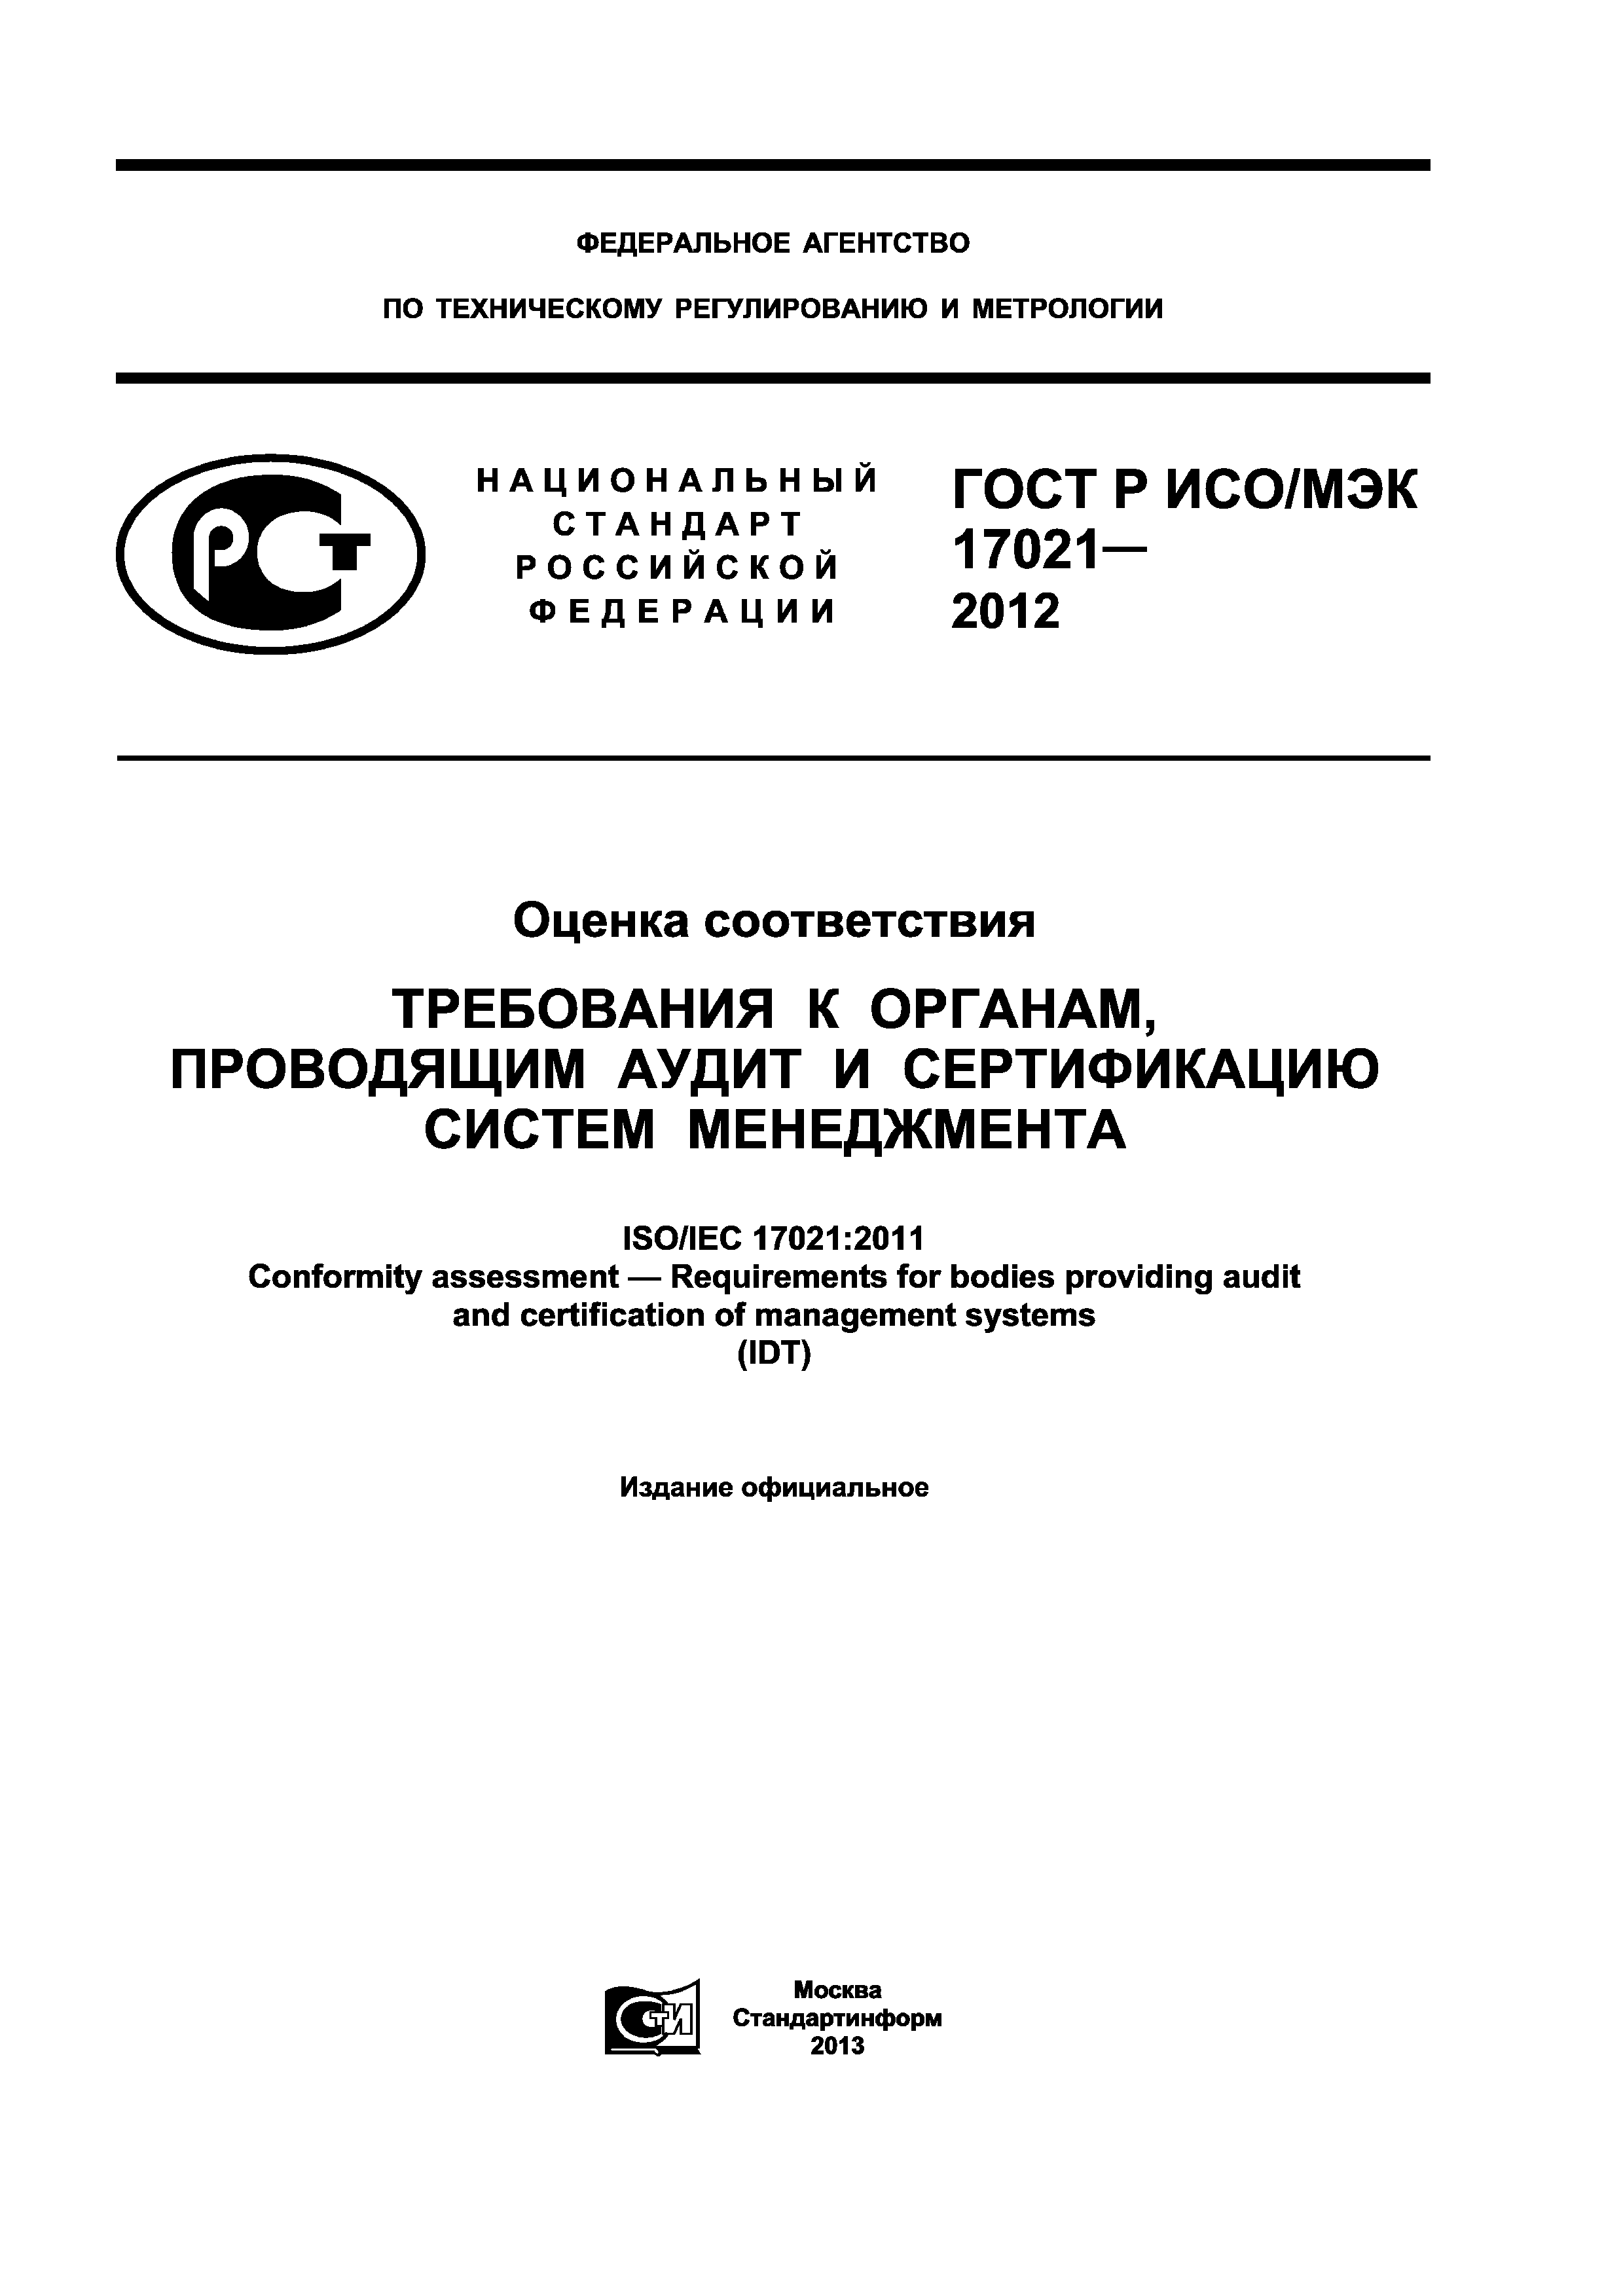 ГОСТ Р ИСО/МЭК 17021-2012